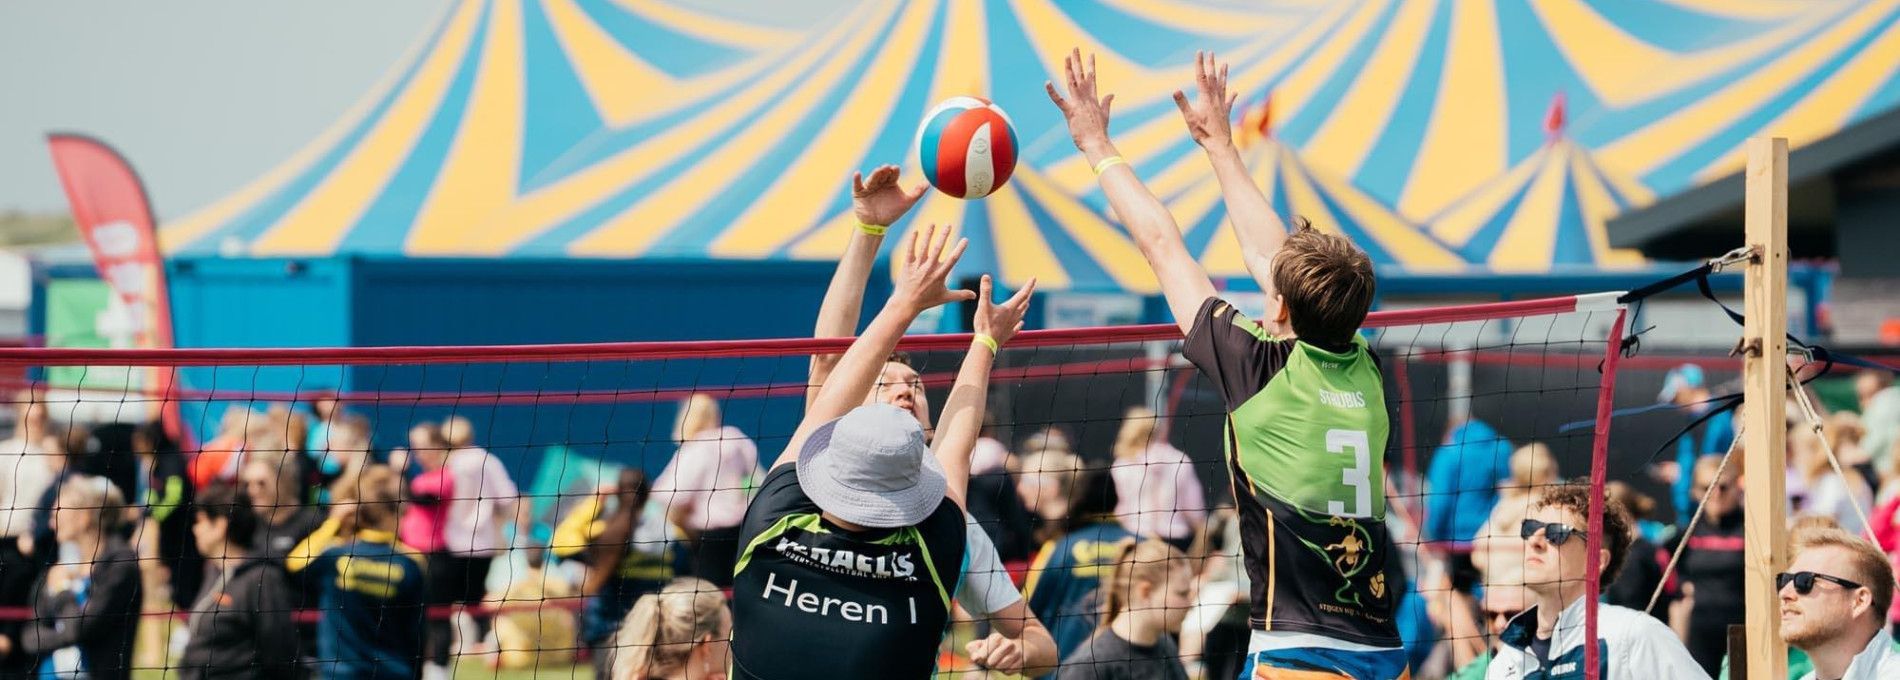 Lycurgus Volleyballturnier - VVV Ameland